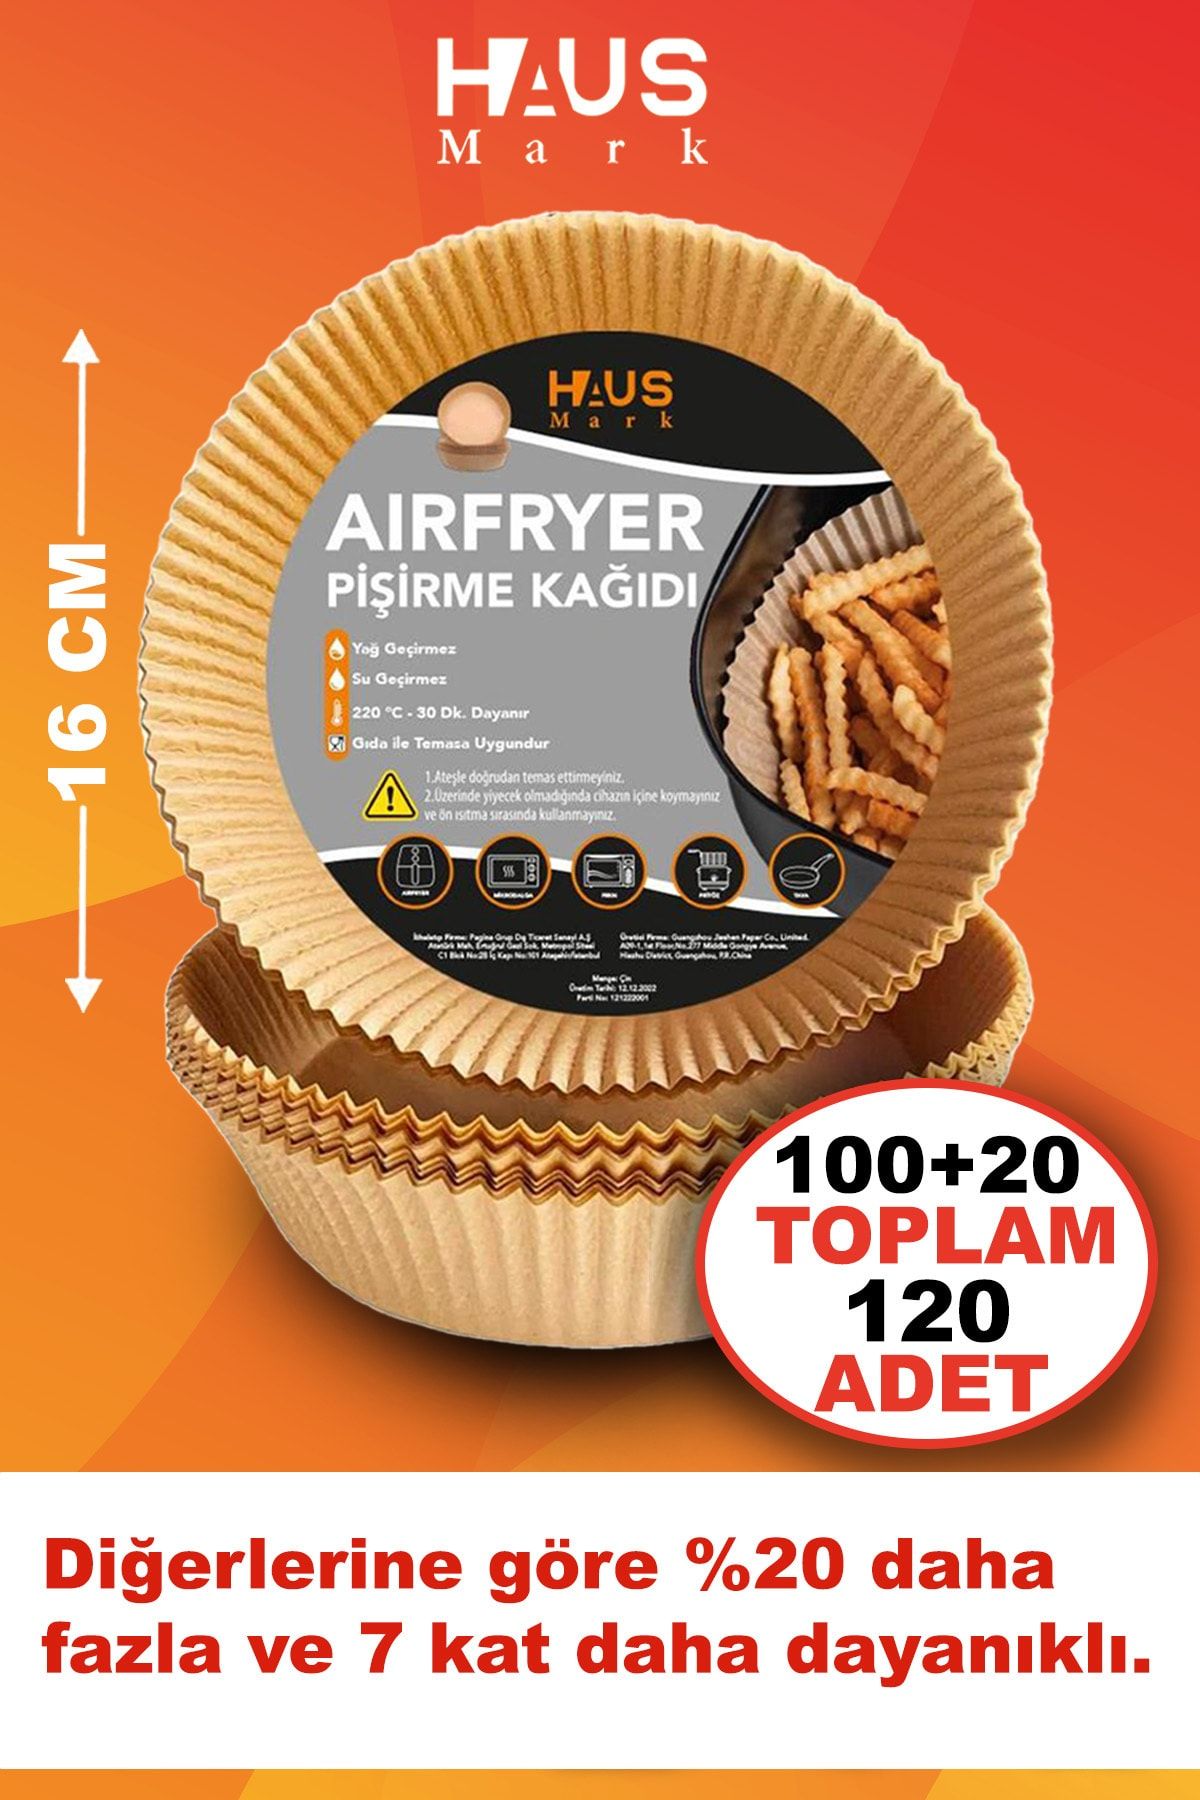 HAUSMARK Airfryer Pişirme Kağıdı 120adet 16cm Yuvarlak Yağsız Hava Fritözü Yağlı Kağıt Airfryer Philips Tefal